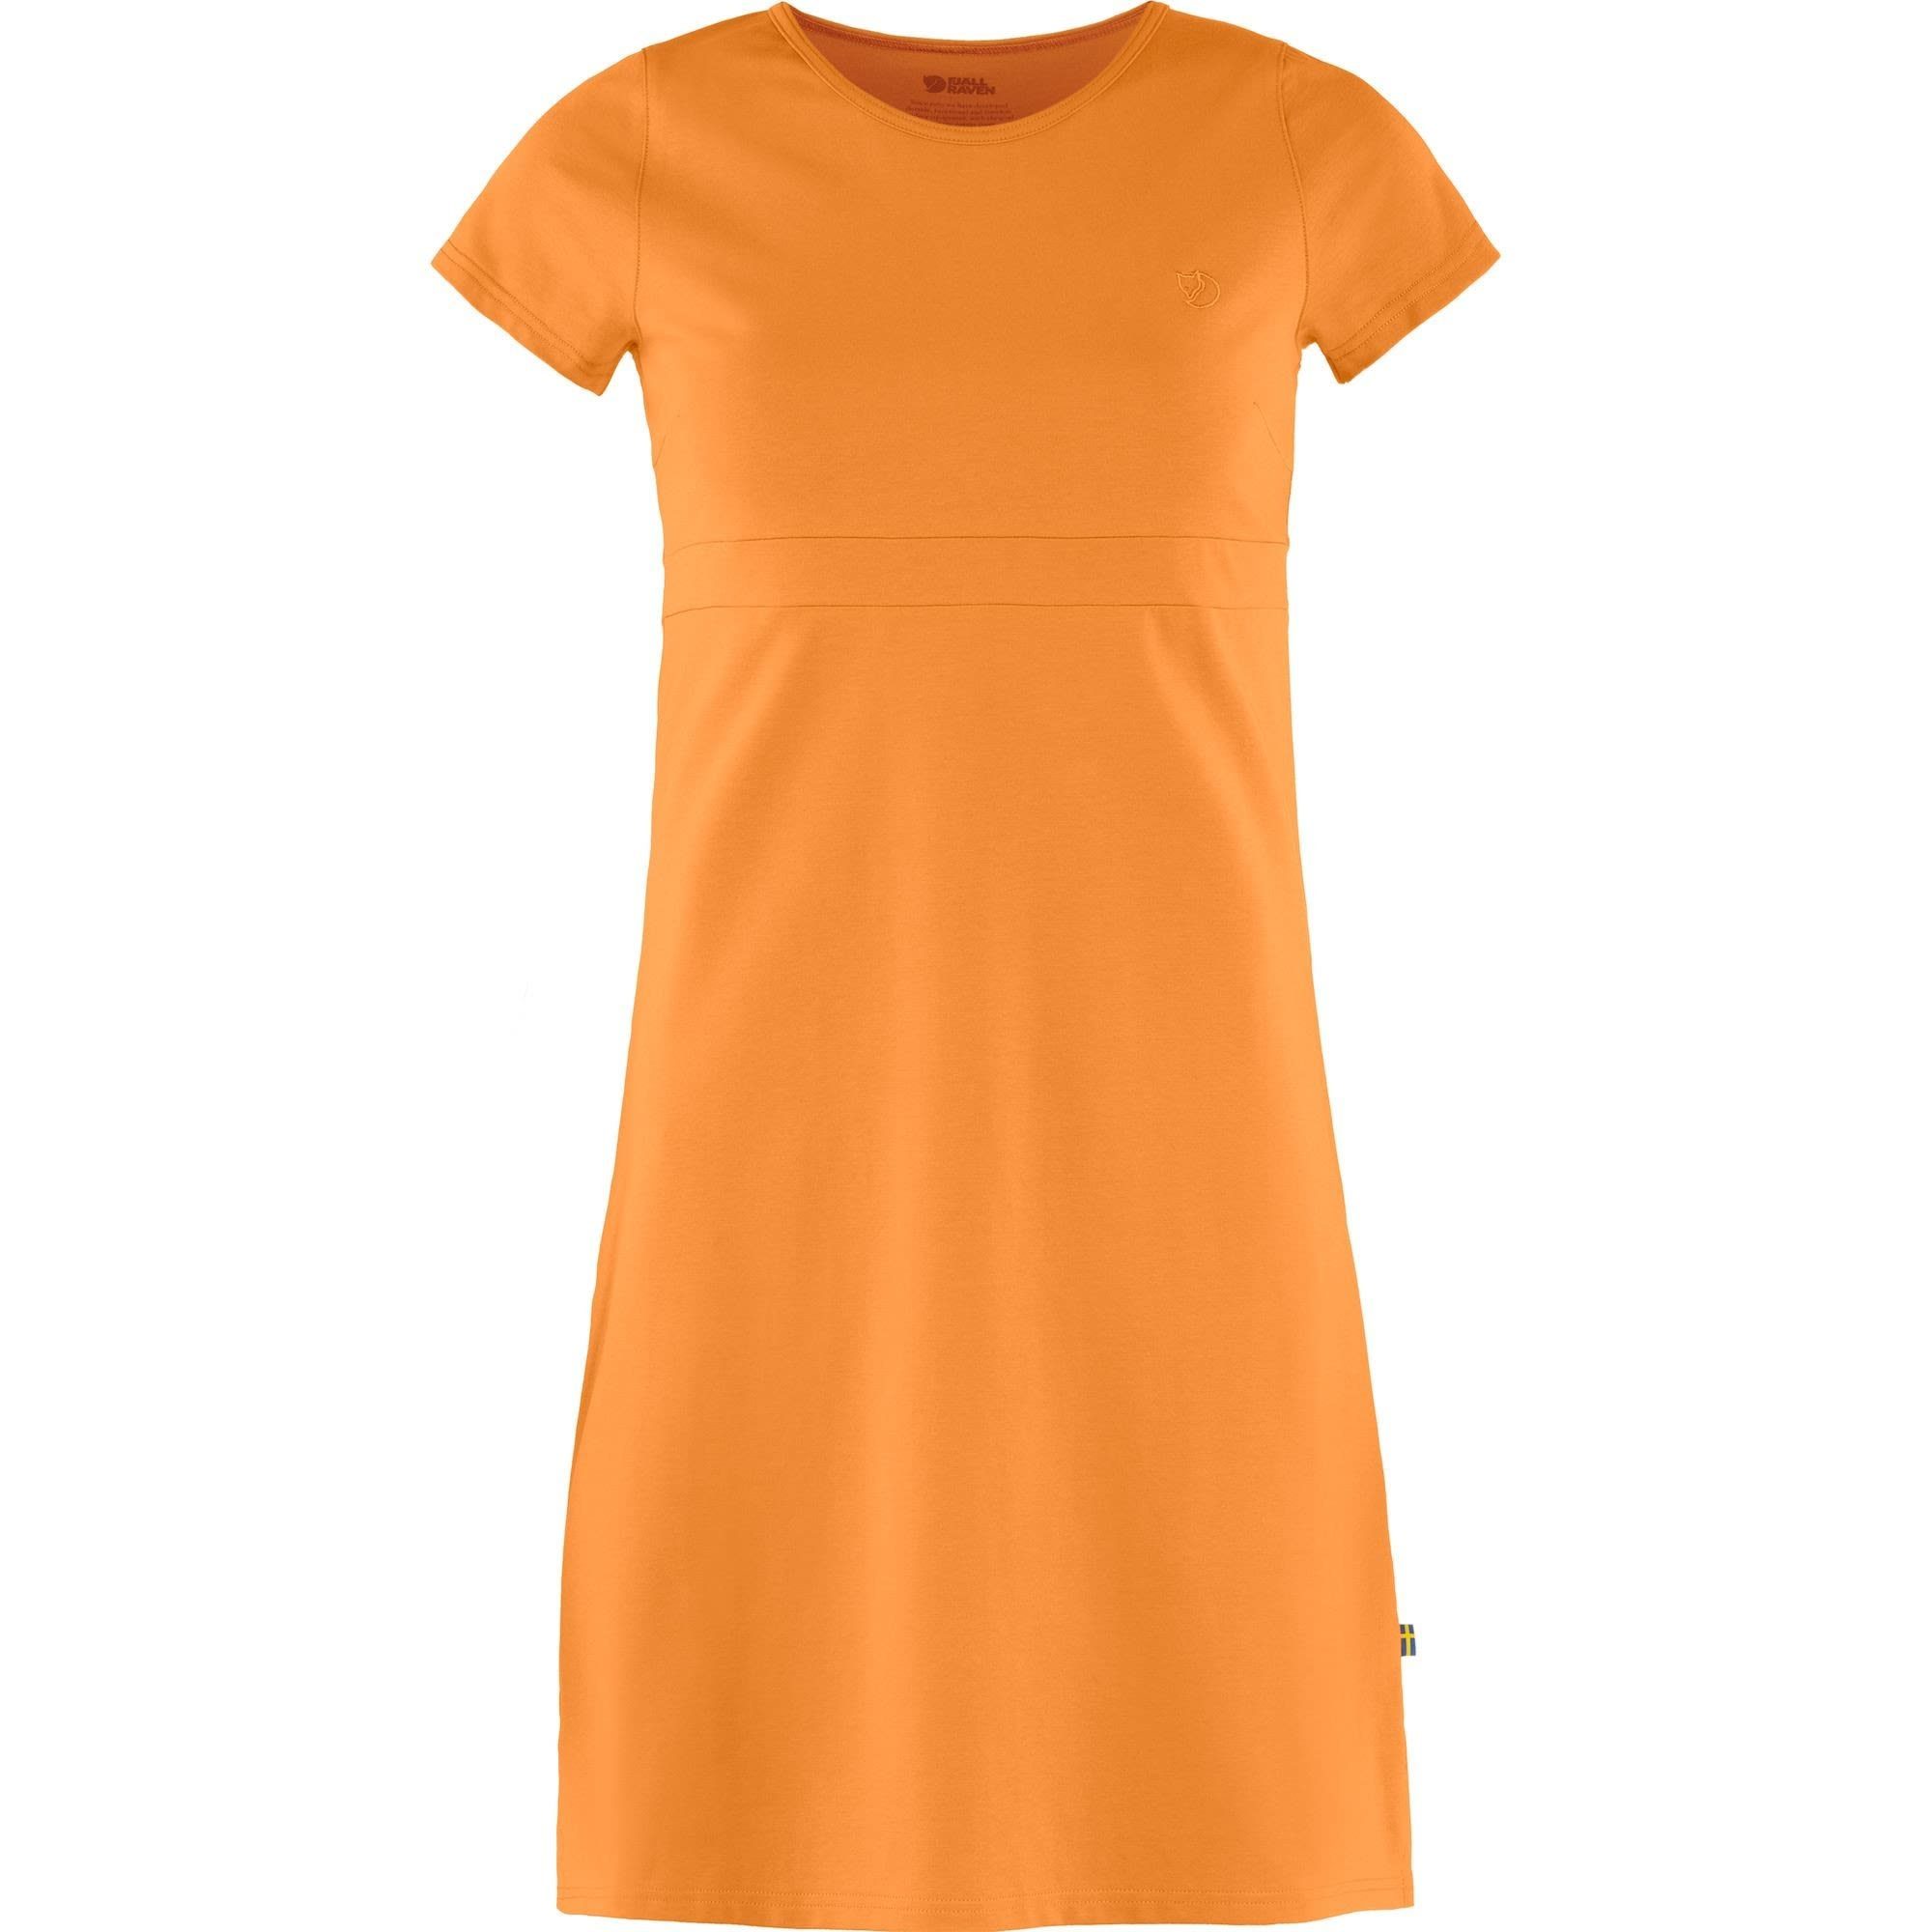 Angebot ermöglichen Fjällräven Sommerkleid Fjällräven W High Coast Dress Damen Orange Kleid Spicy